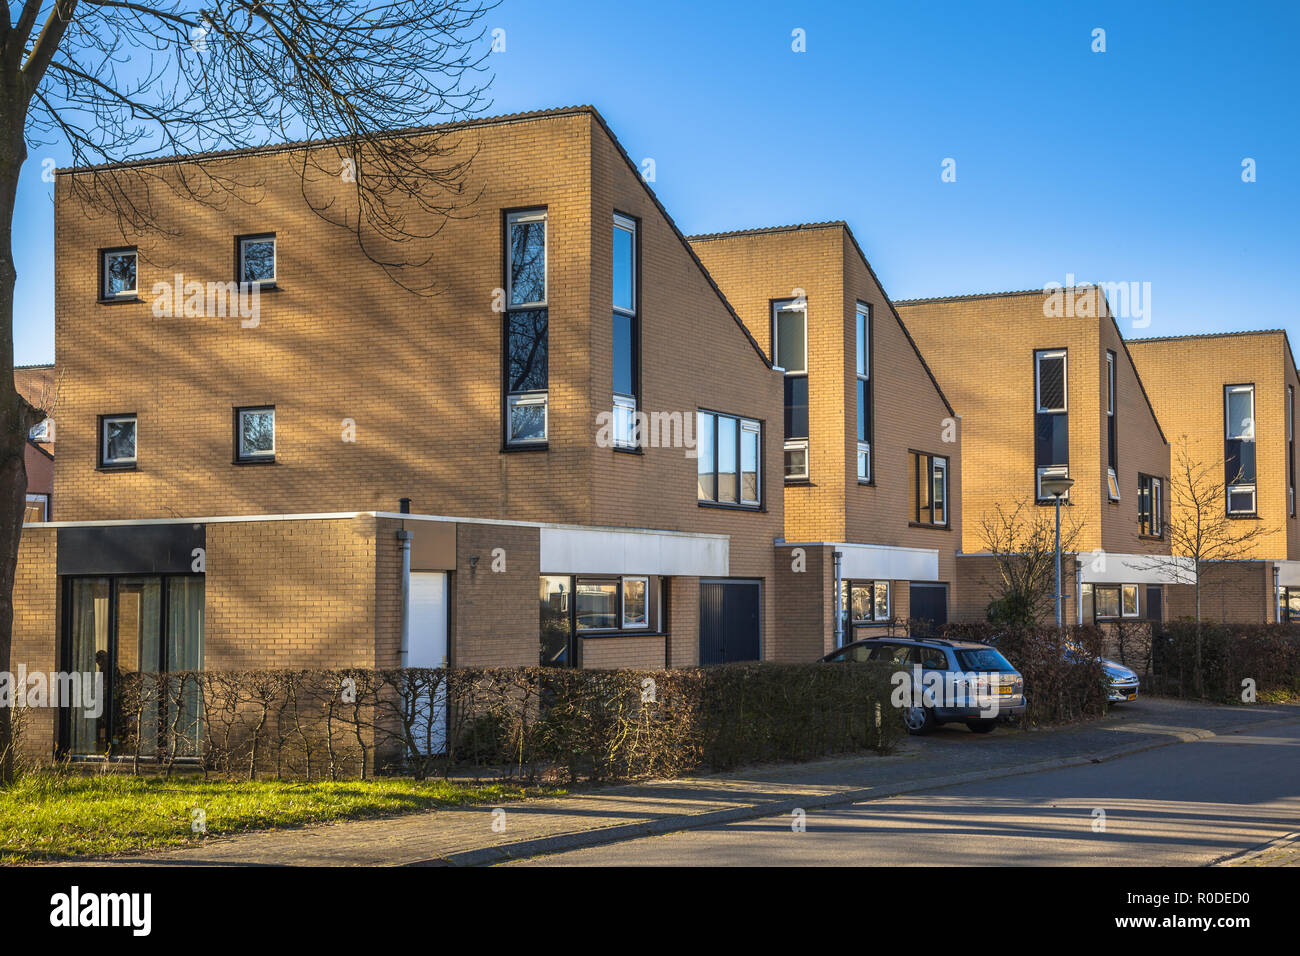 Maisons familiales en milieu urbain dans un quartier de banlieue près de Groningen, Pays-Bas Banque D'Images